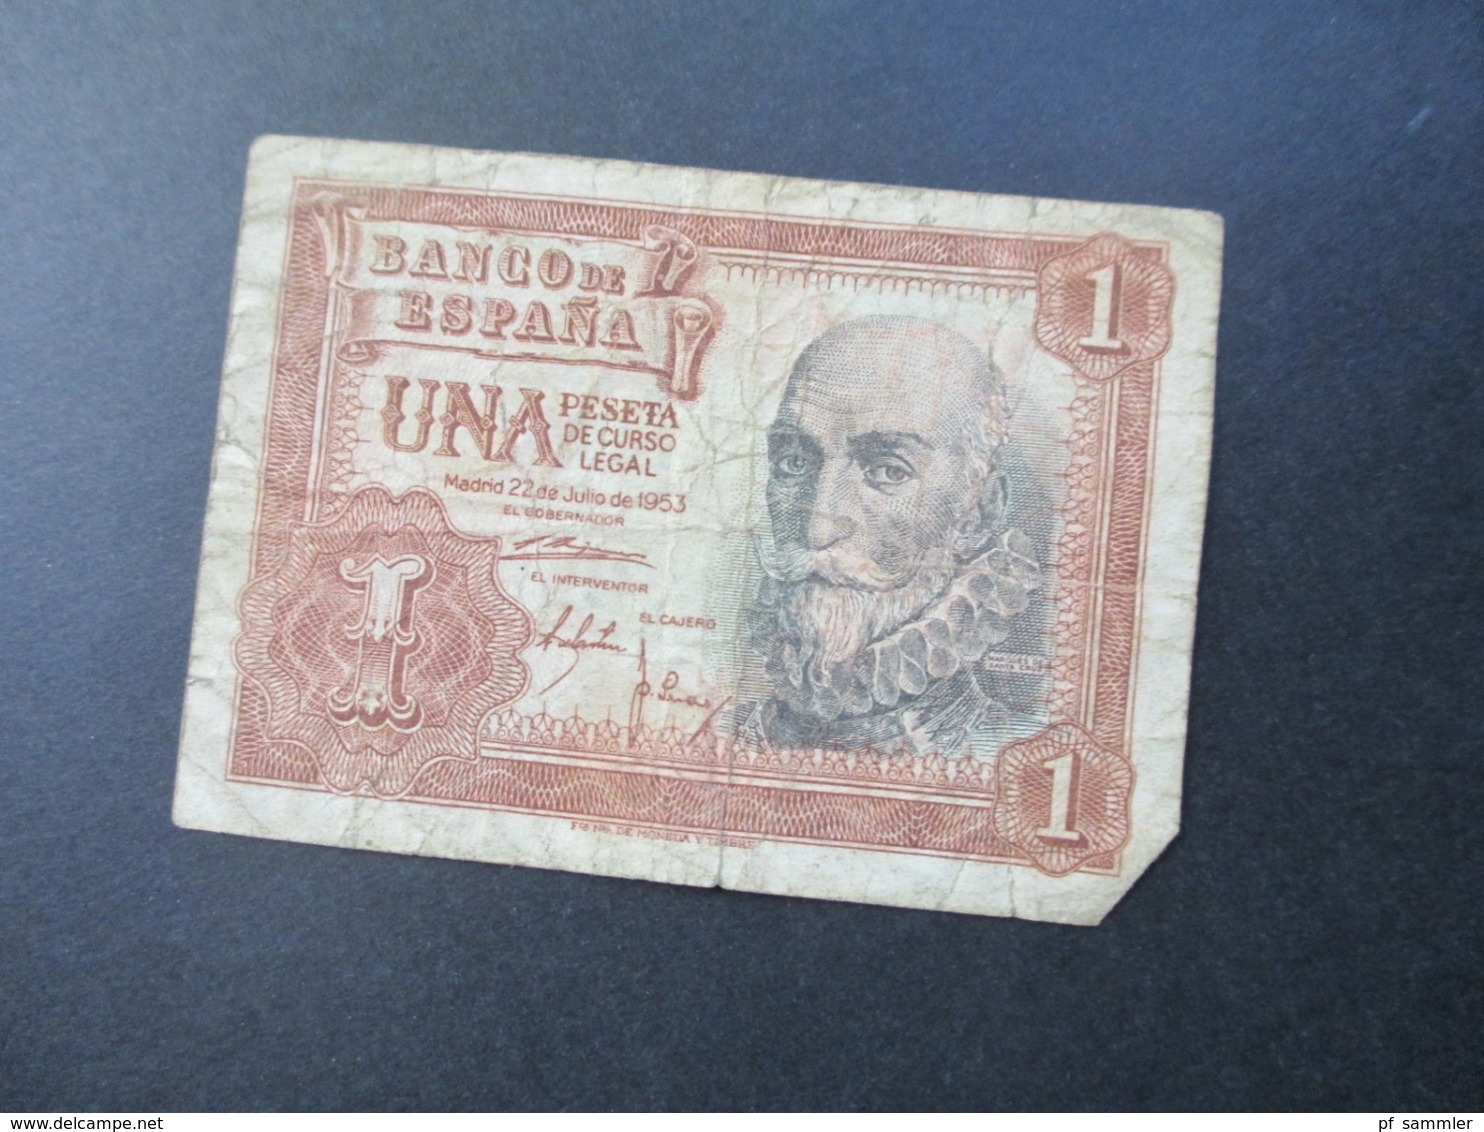 Kleines Konvolut Banknoten ab Deutsches Reich 1914 - Europa und etwas Asien und Südamerika! 20 Scheine